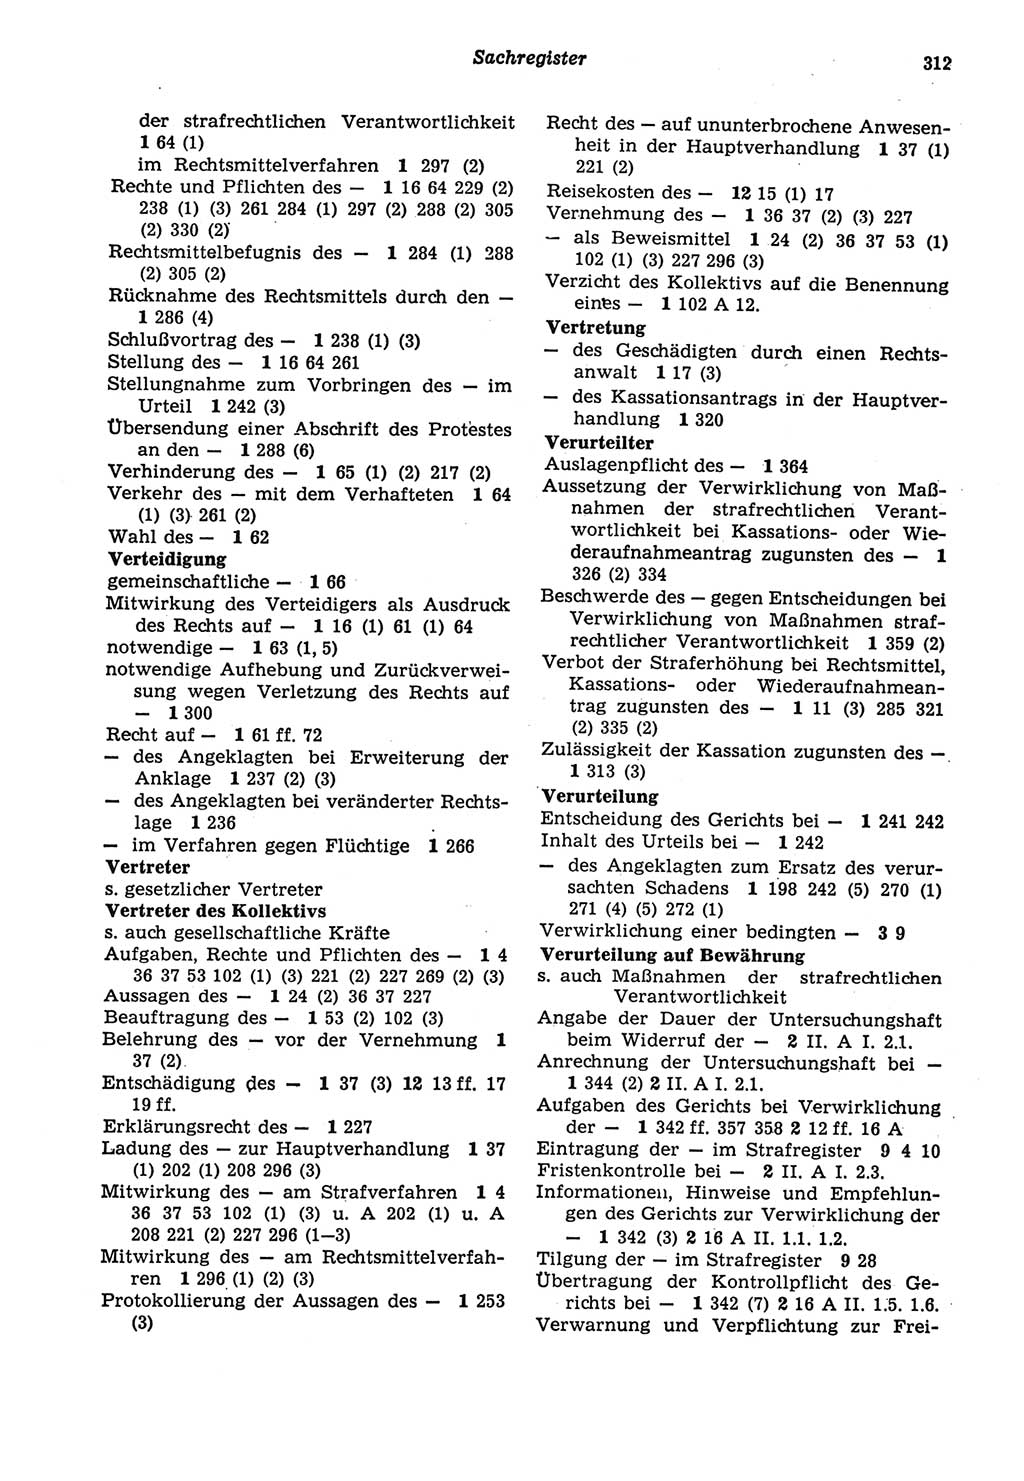 Strafprozeßordnung (StPO) der Deutschen Demokratischen Republik (DDR) sowie angrenzende Gesetze und Bestimmungen 1977, Seite 312 (StPO DDR Ges. Best. 1977, S. 312)